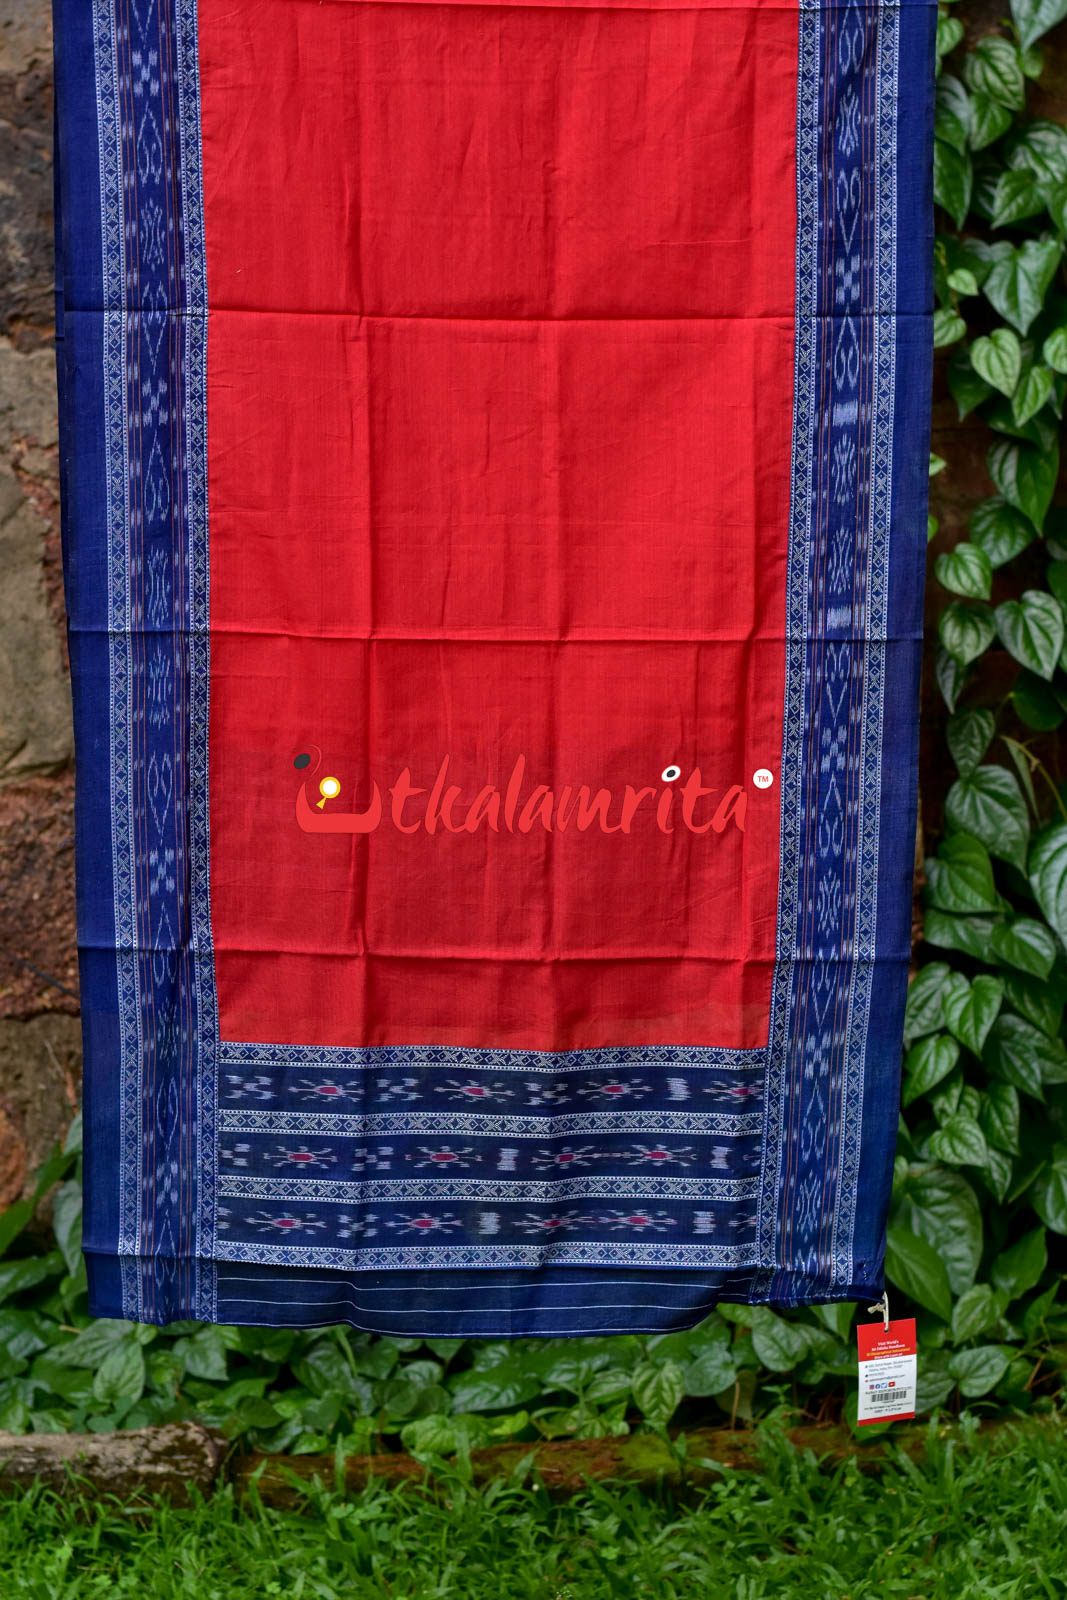 Navy Blue Red Pasapali Long Flower Bandha Dress Set